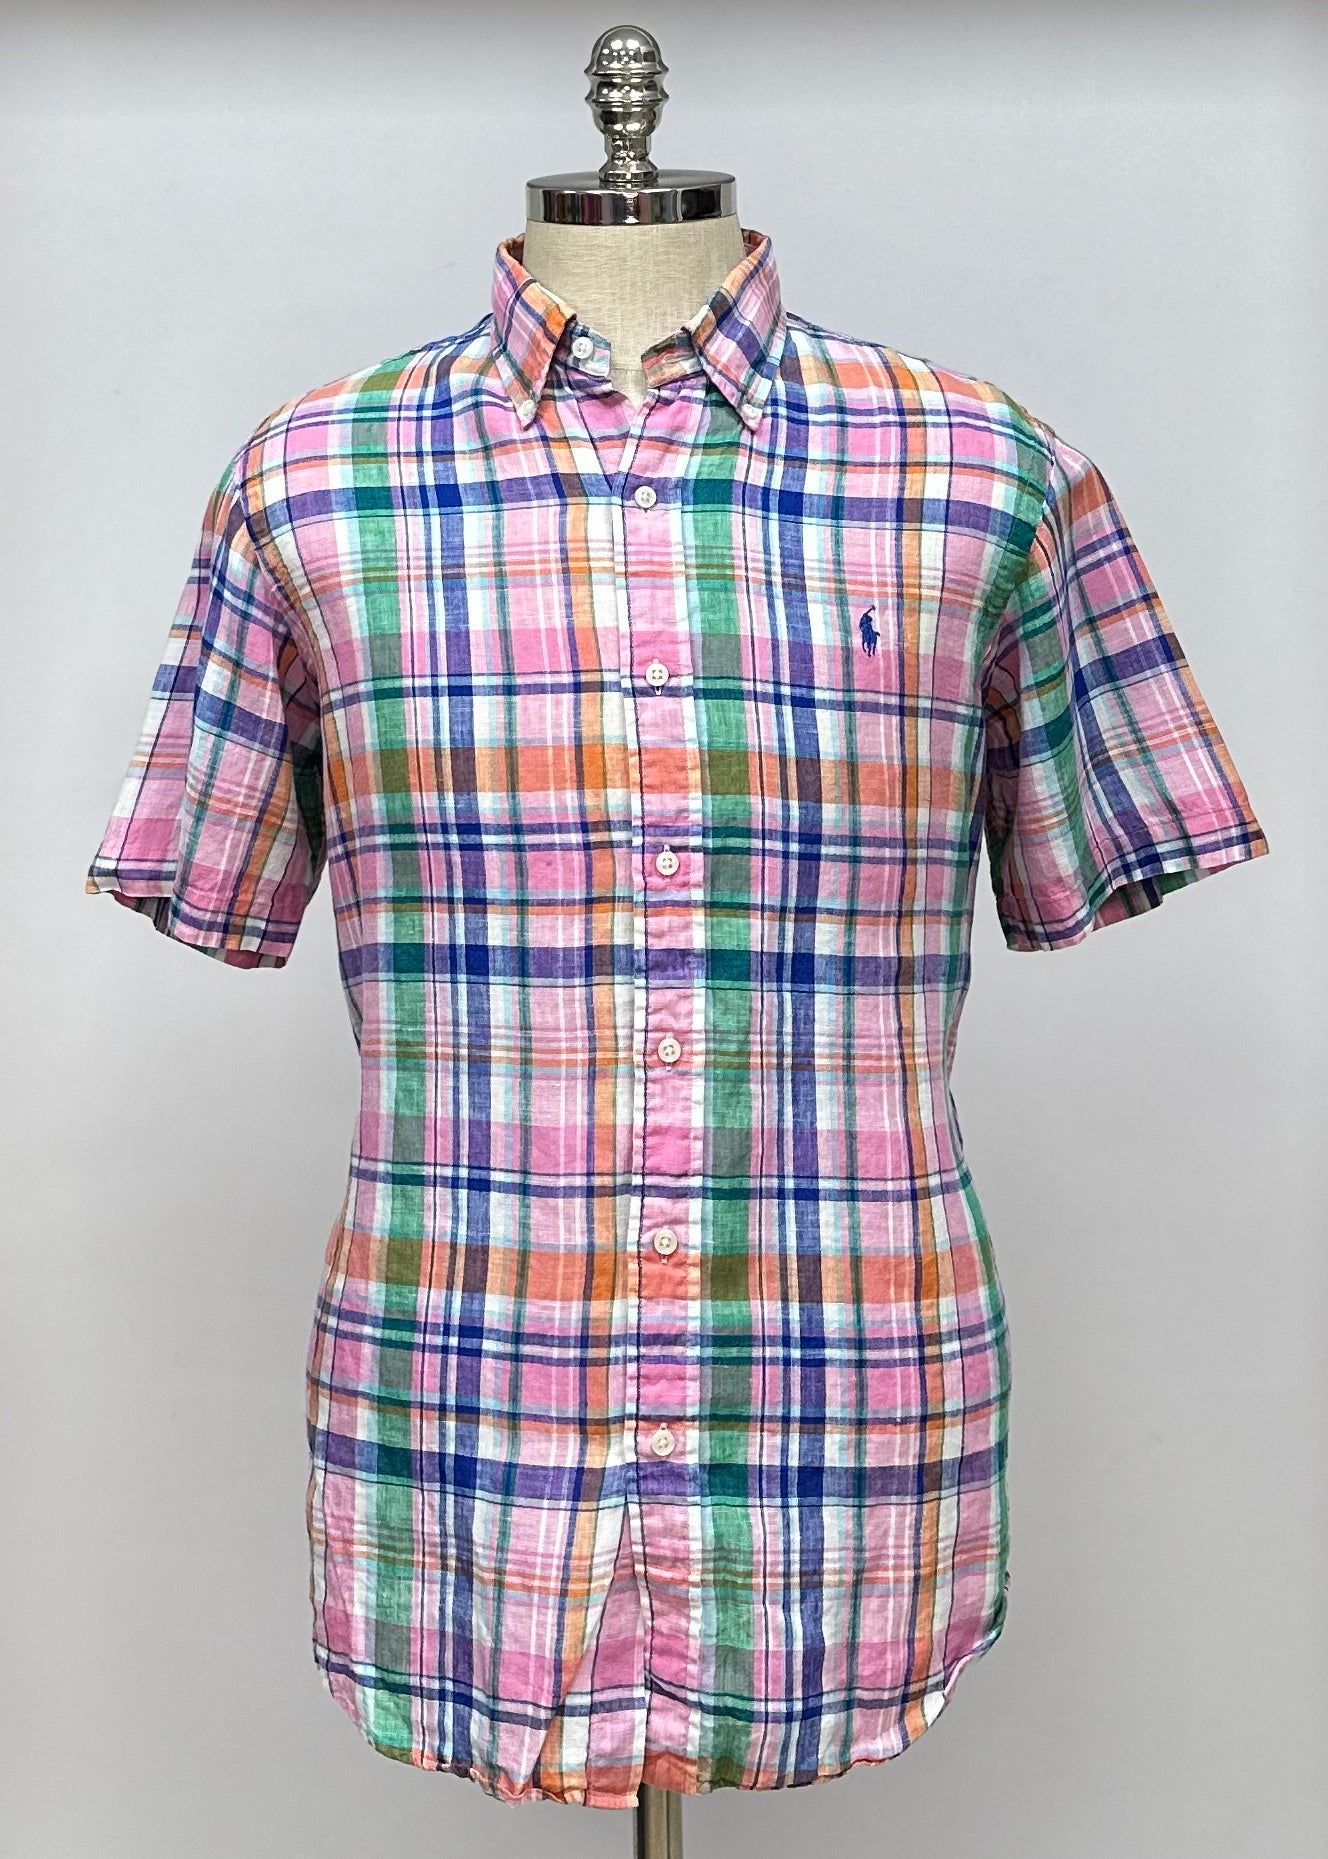 Camisa Polo Ralph Lauren 🏇🏼 de lino con cuadros multicolor Talla L Entalle Regular